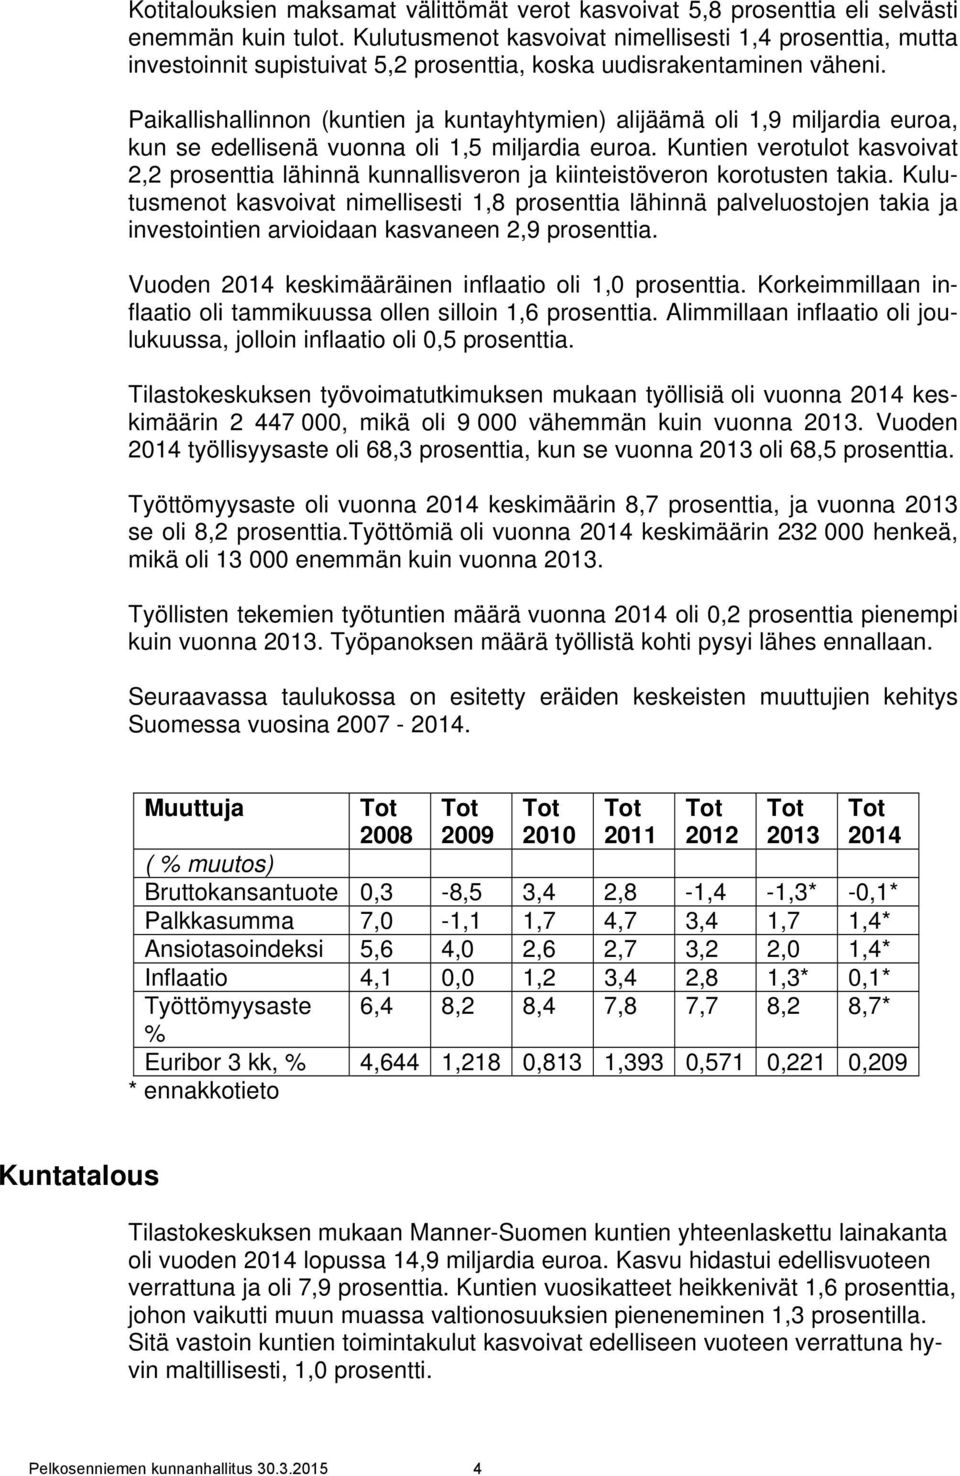 Paikallishallinnon (kuntien ja kuntayhtymien) alijäämä oli 1,9 miljardia euroa, kun se edellisenä vuonna oli 1,5 miljardia euroa.